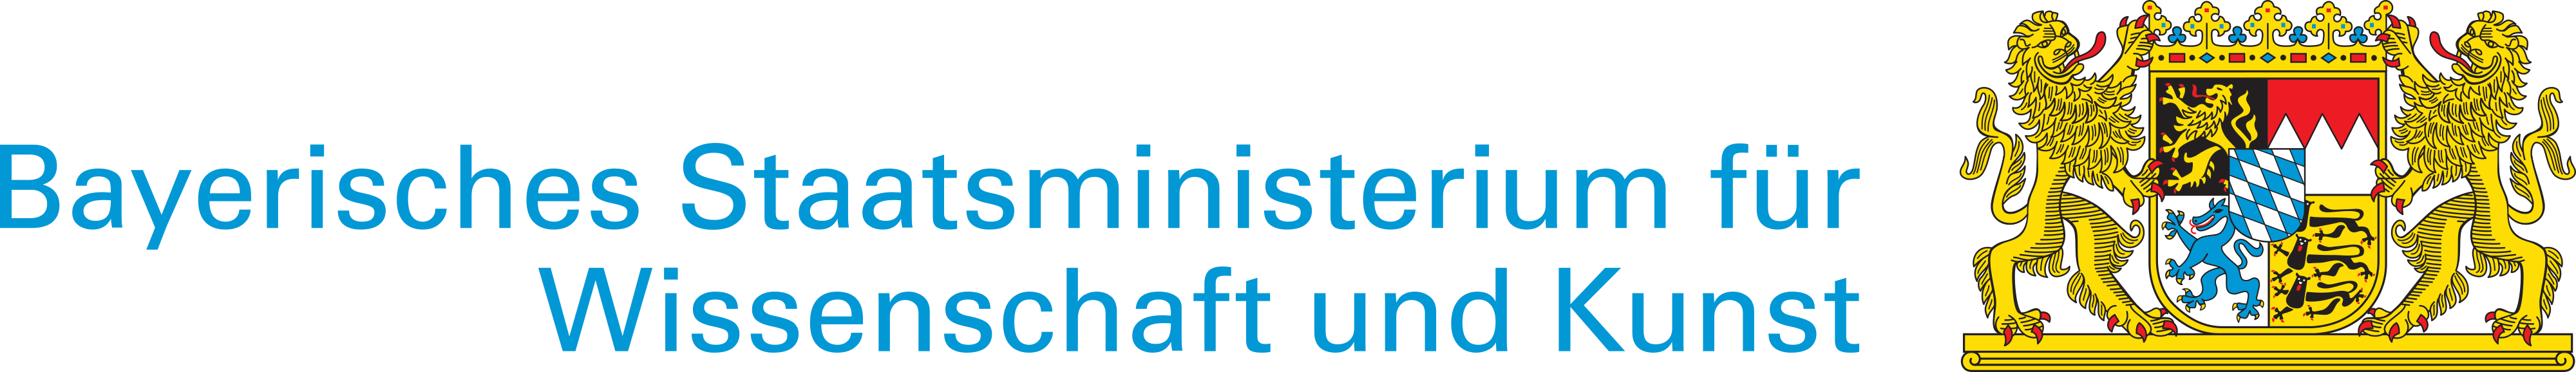 Bayerisches Staatsministerium für Wissenschaft und Kunst